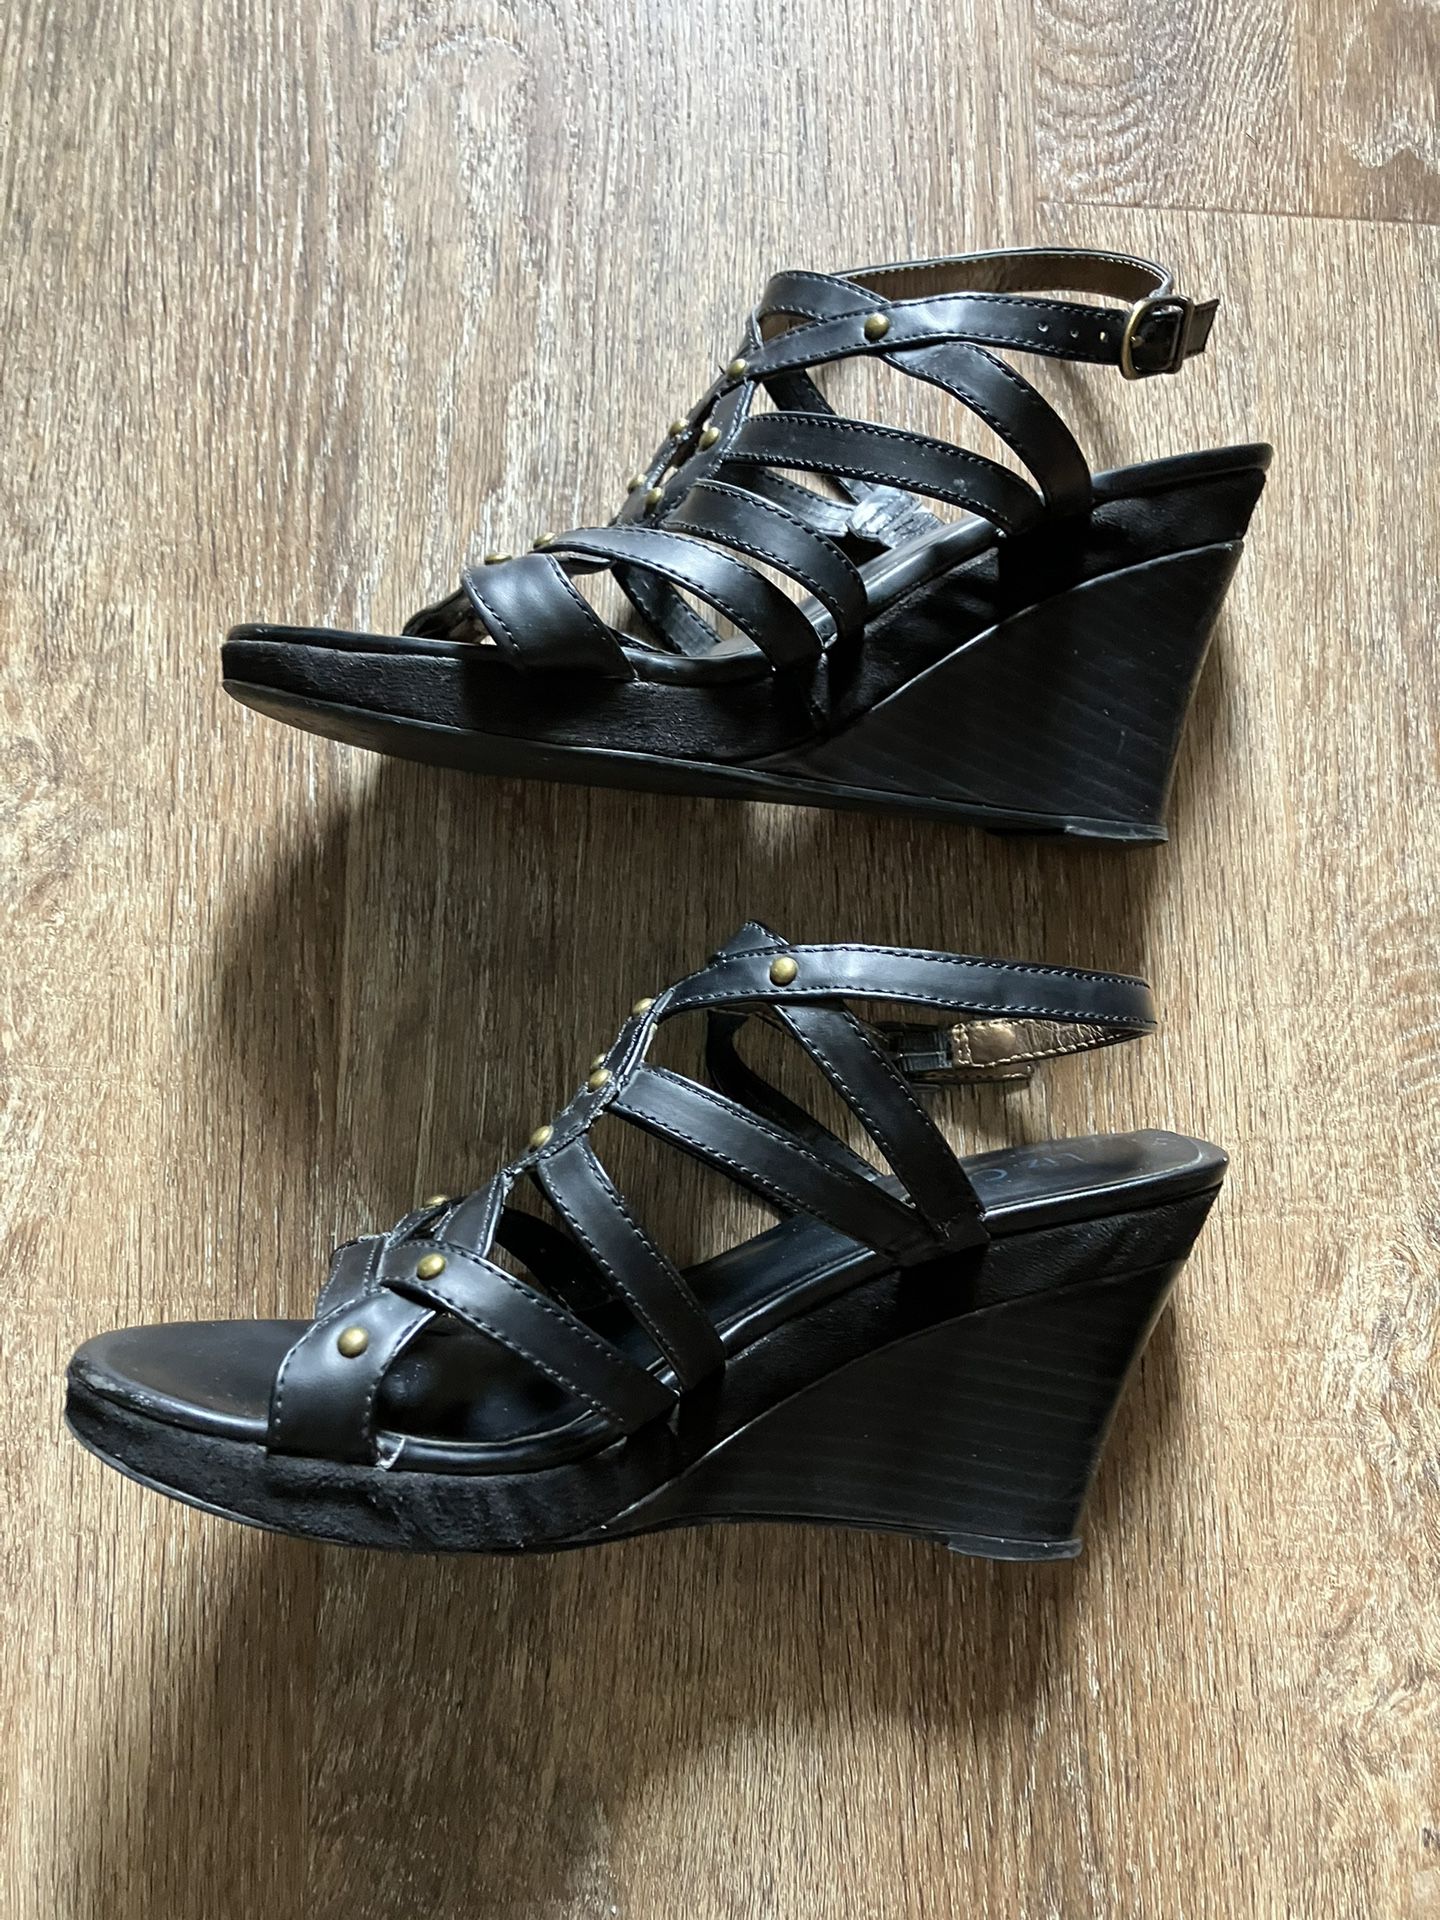 Liz Cole Black Sandals Size 9W